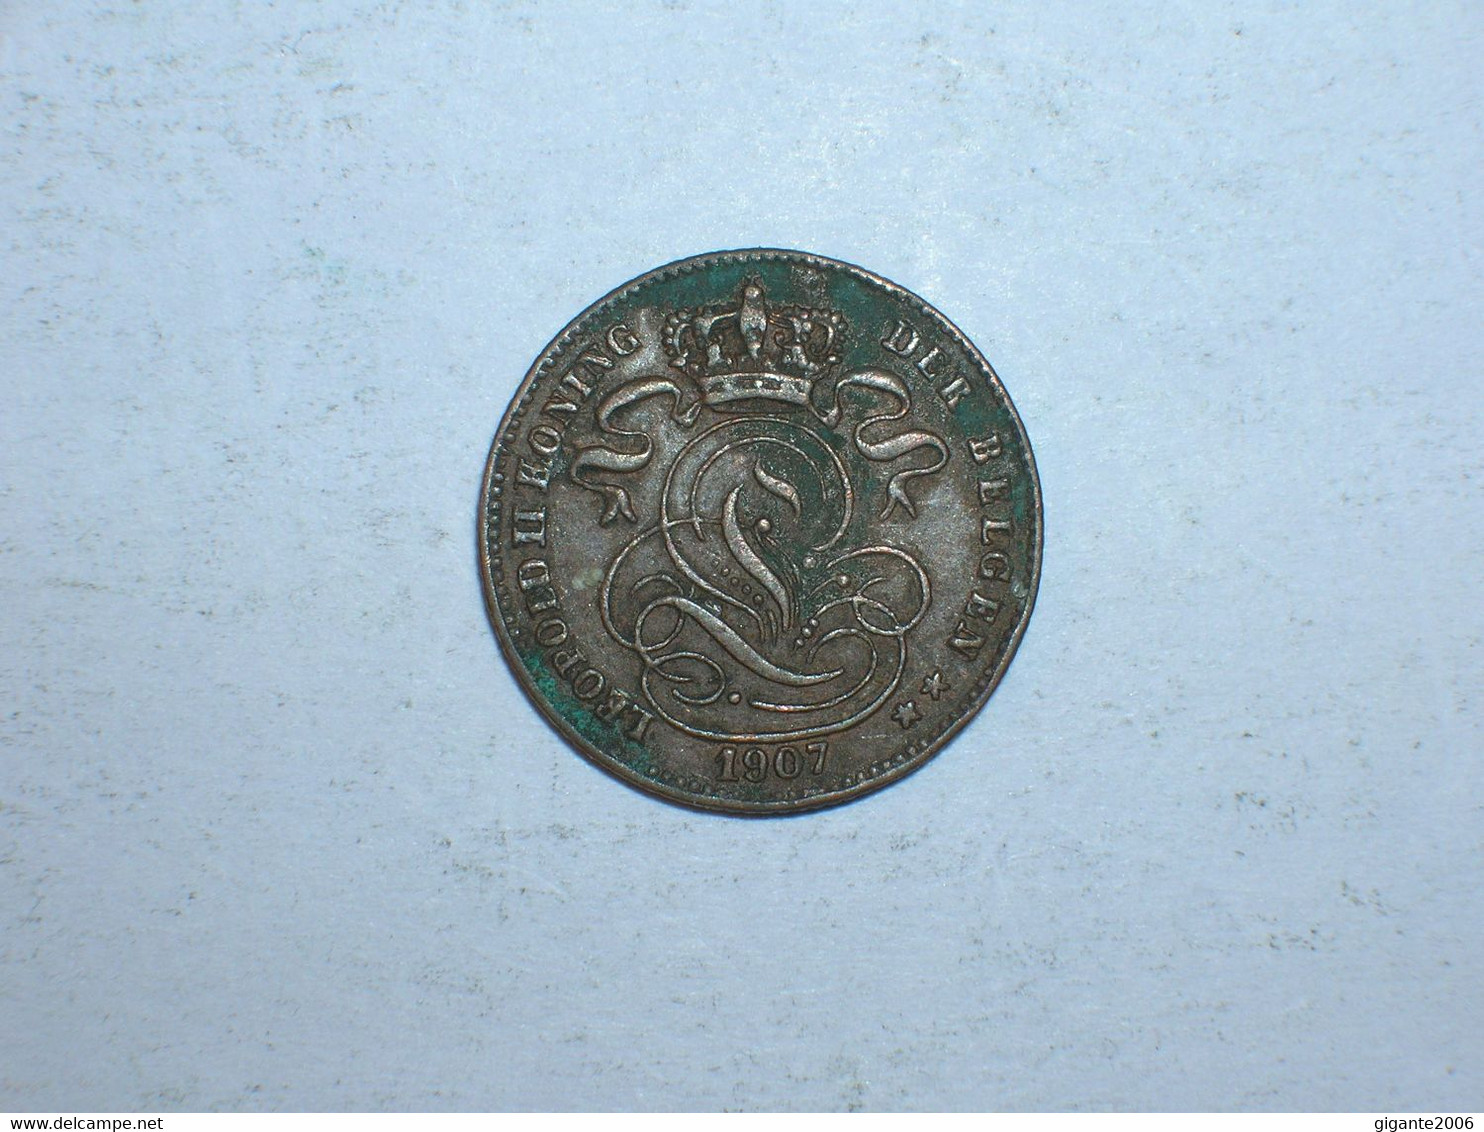 BELGICA 1 CENTIMO 1907 FL (9240) - 1 Cent